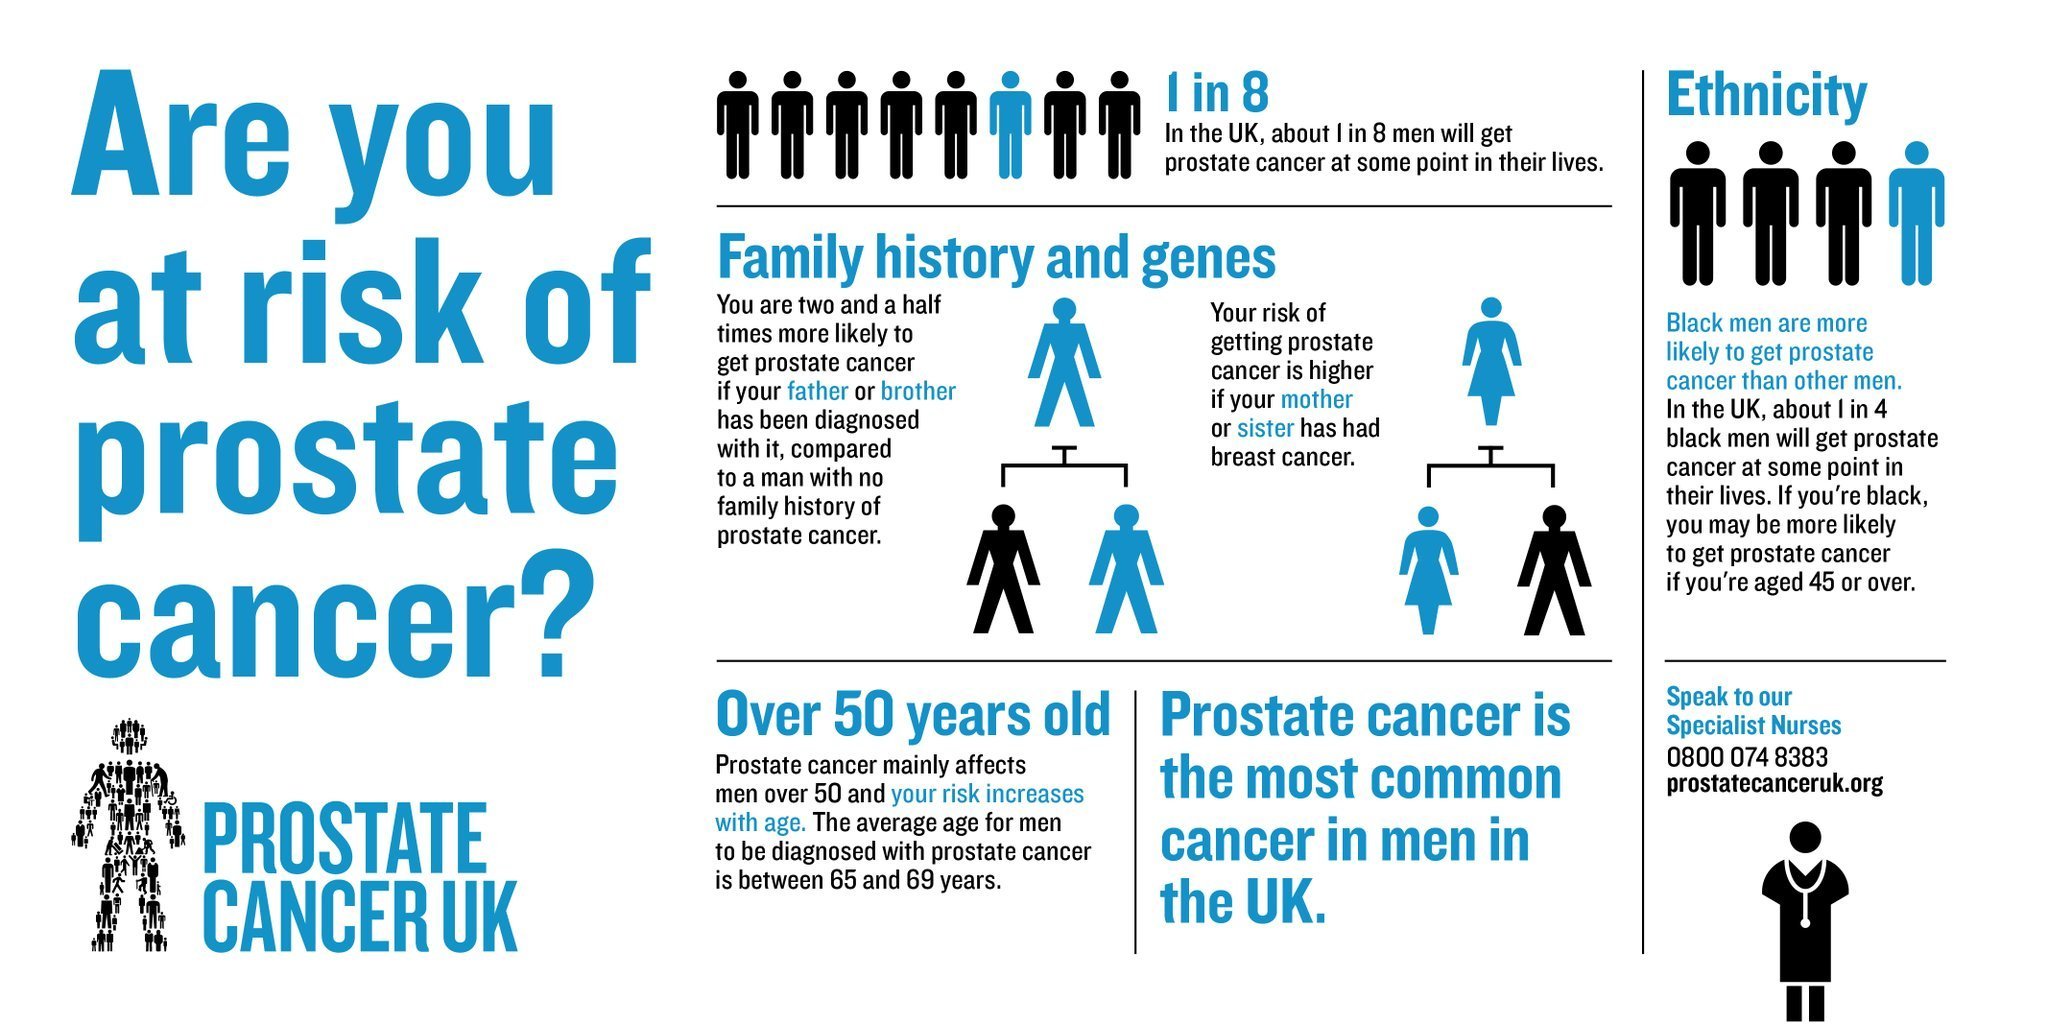 Am I At Risk Of Prostate Cancer?